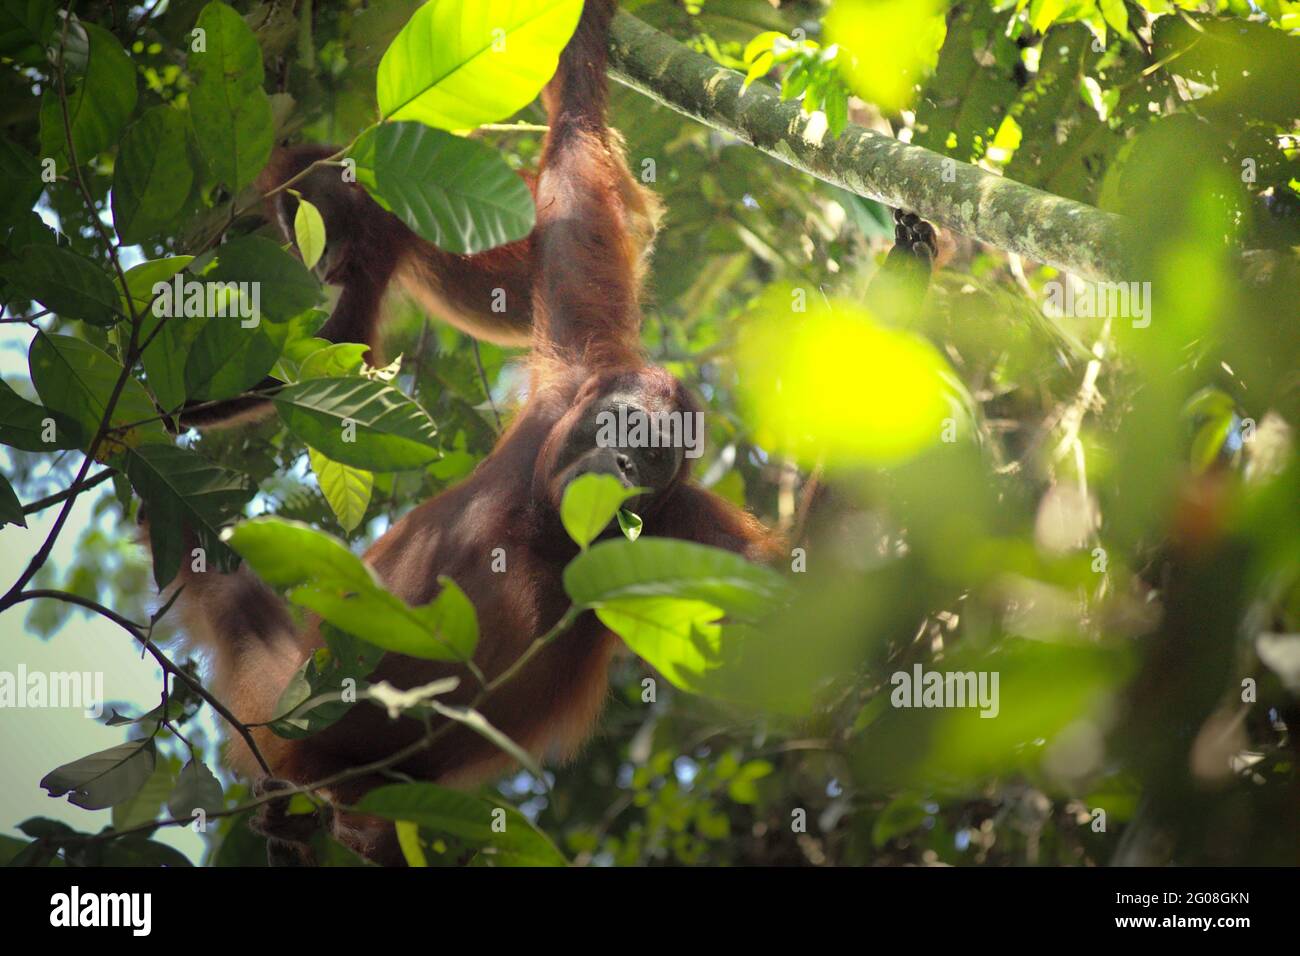 Wilde Orang-Utans im Kutai-Nationalpark, Ost-Kalimantan, Indonesien. Unterart Bornean orangutan (Pongo pygmaeus morio) im Nordosten. Abgesehen von Entwaldung und Wilderei bringt der Klimawandel mehr Aussterberisiko für diese endemische, vom Aussterben bedrohte Art mit sich. Höhere Temperaturen, ungewöhnliche und extreme Klimabedingungen, zum Beispiel, werden die Verfügbarkeit ihrer Lebensmittel beeinflussen. Stockfoto